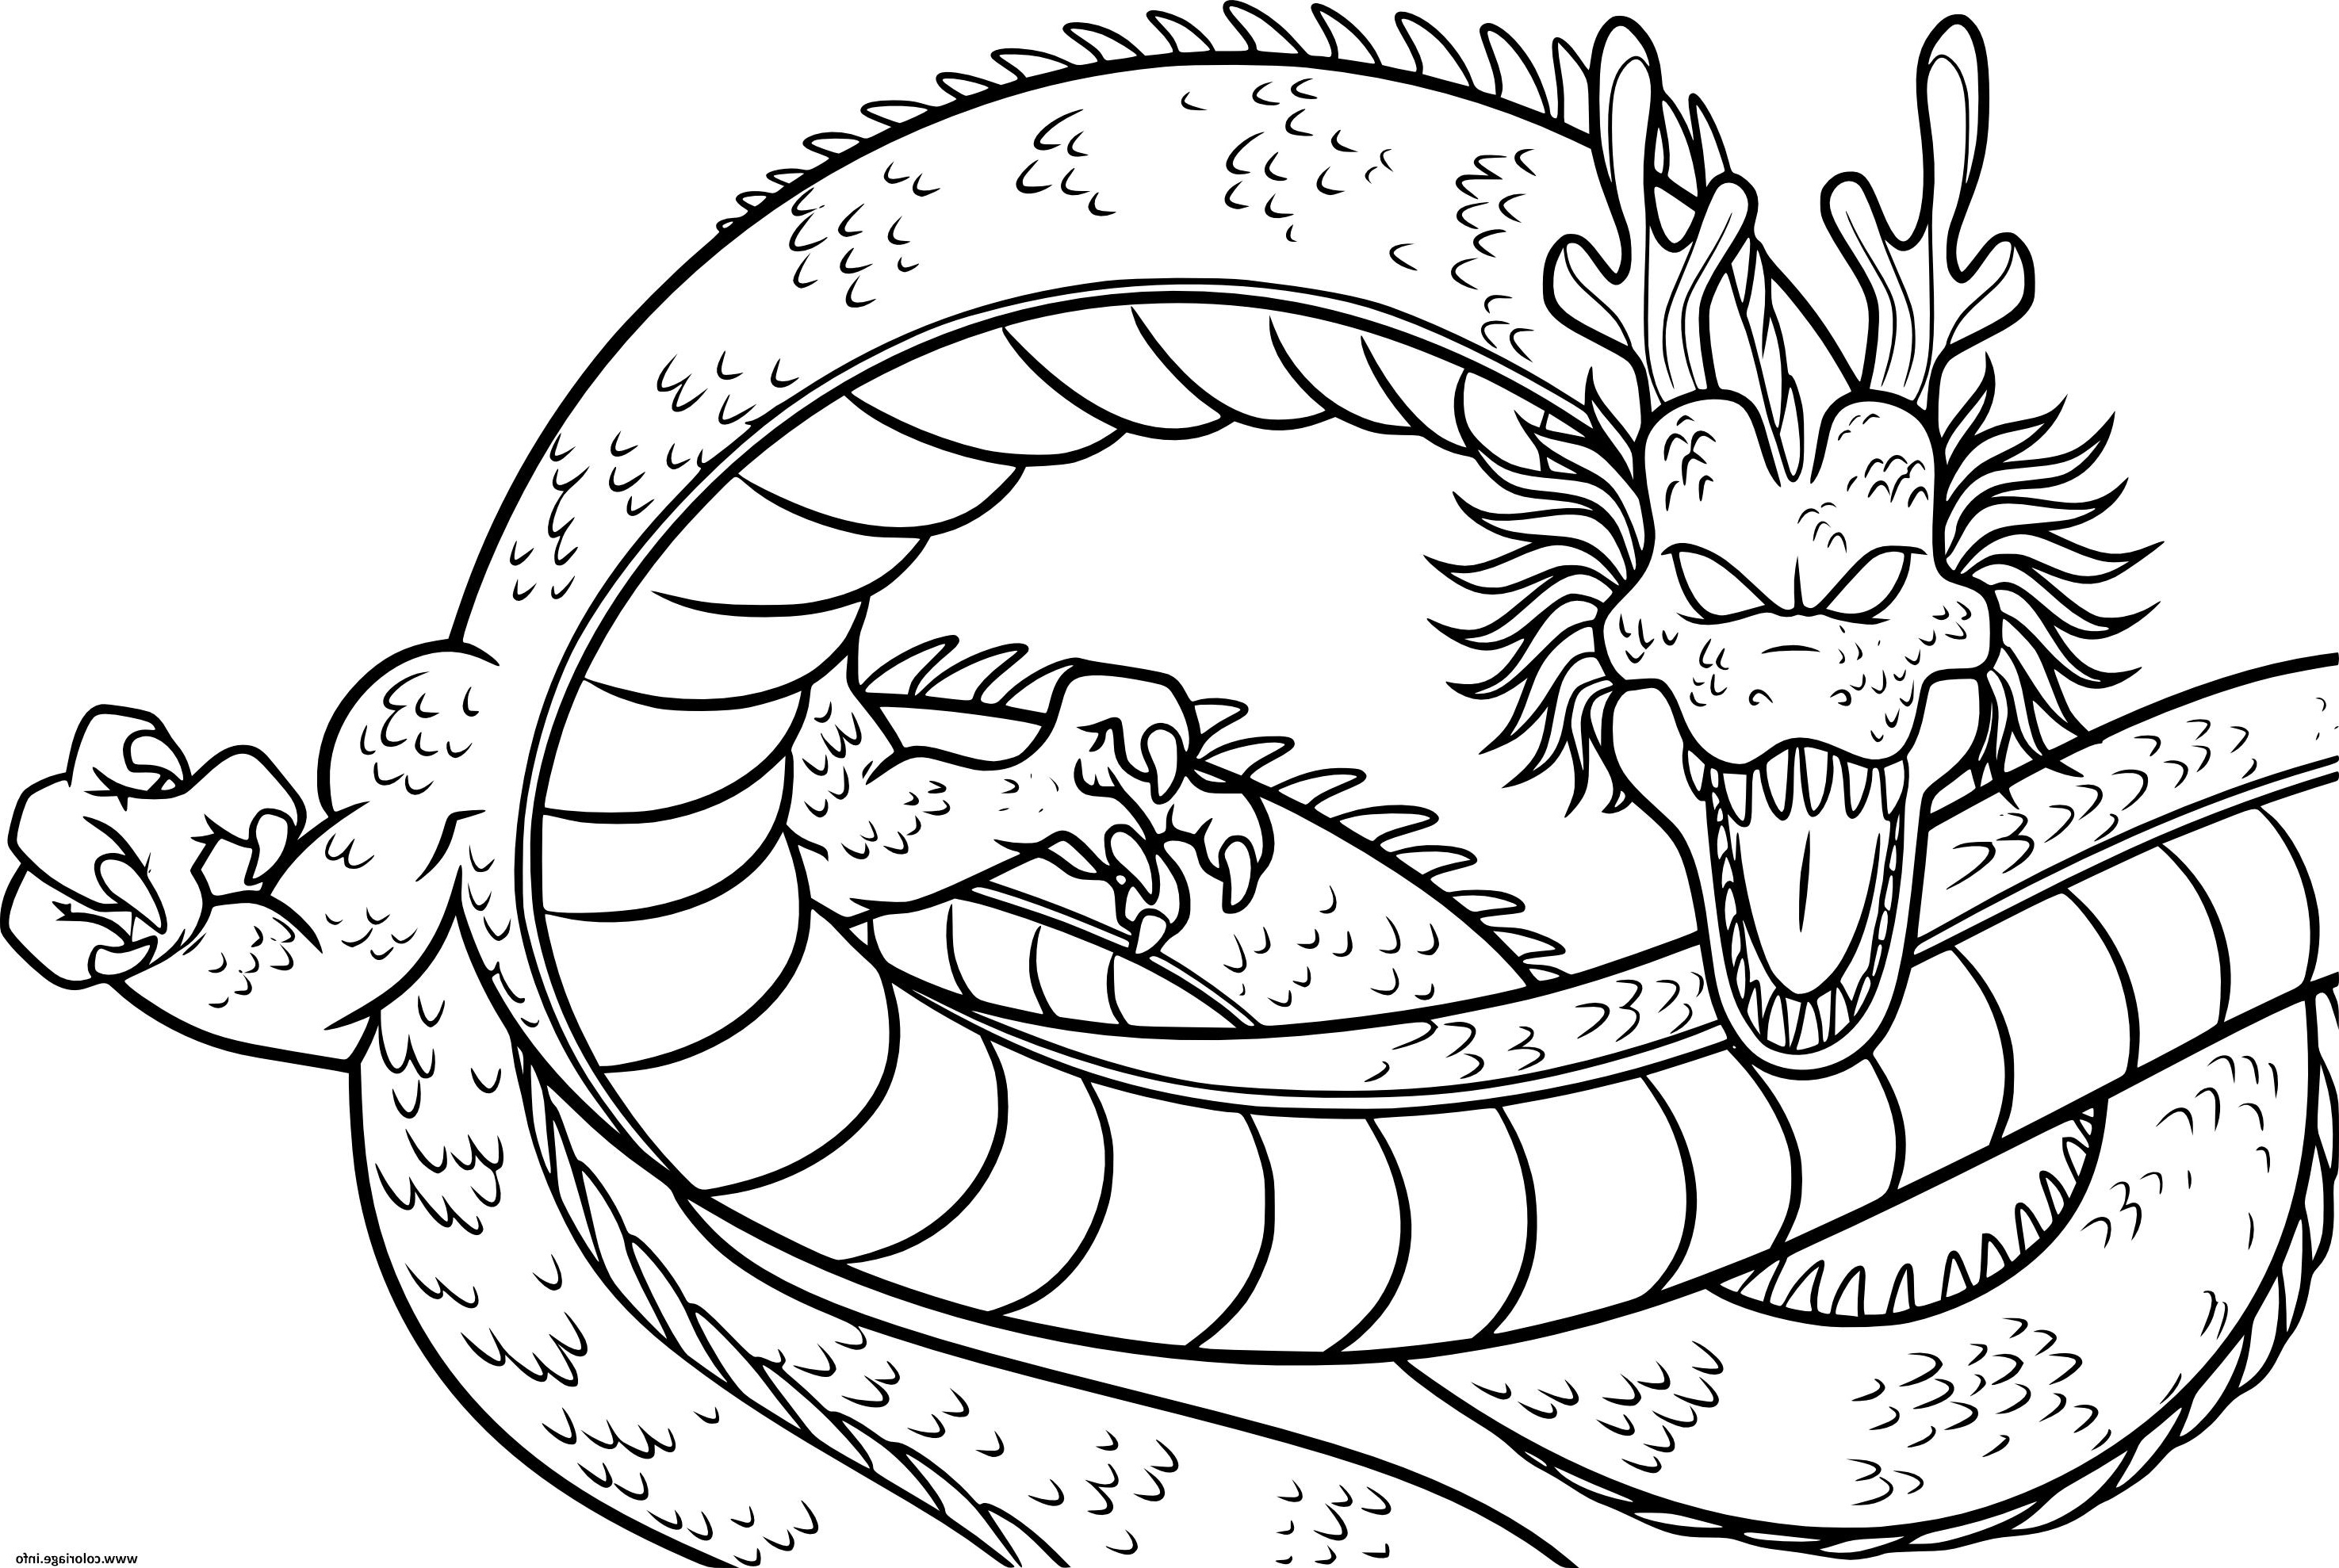 dragon de dragonballz coloriage dessin